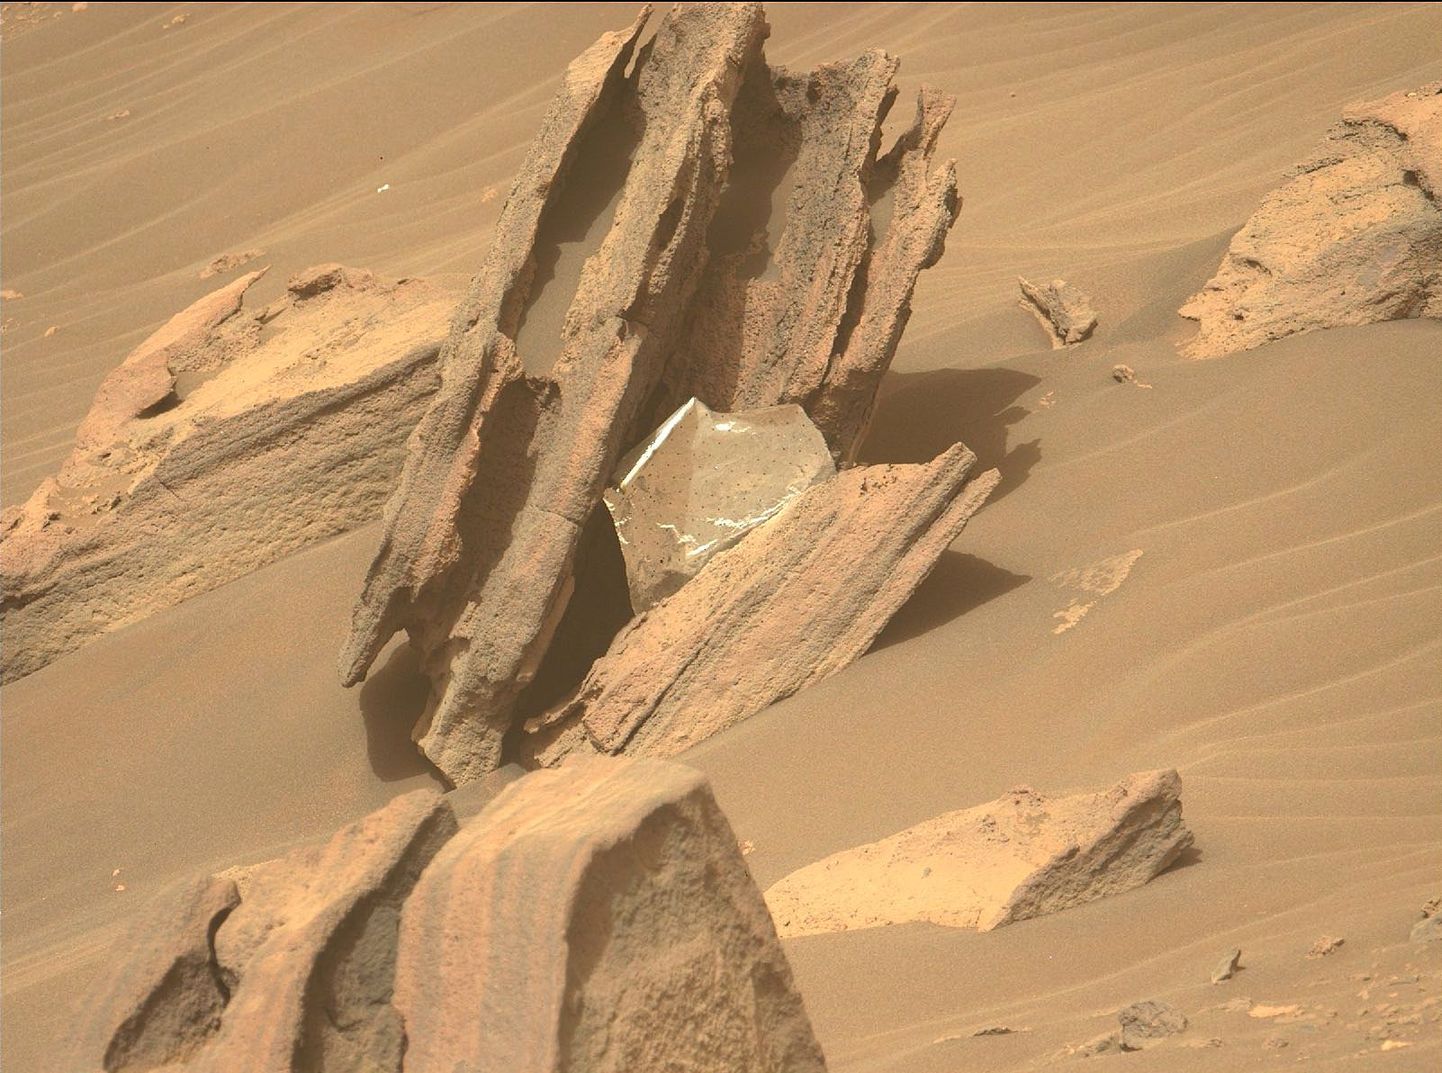 Tehislikust materjalist tükk Marsikulguri kaameras tõstis korraks nii mõnegi Marsi uuriva teadlase pulssi ja vererõhku.